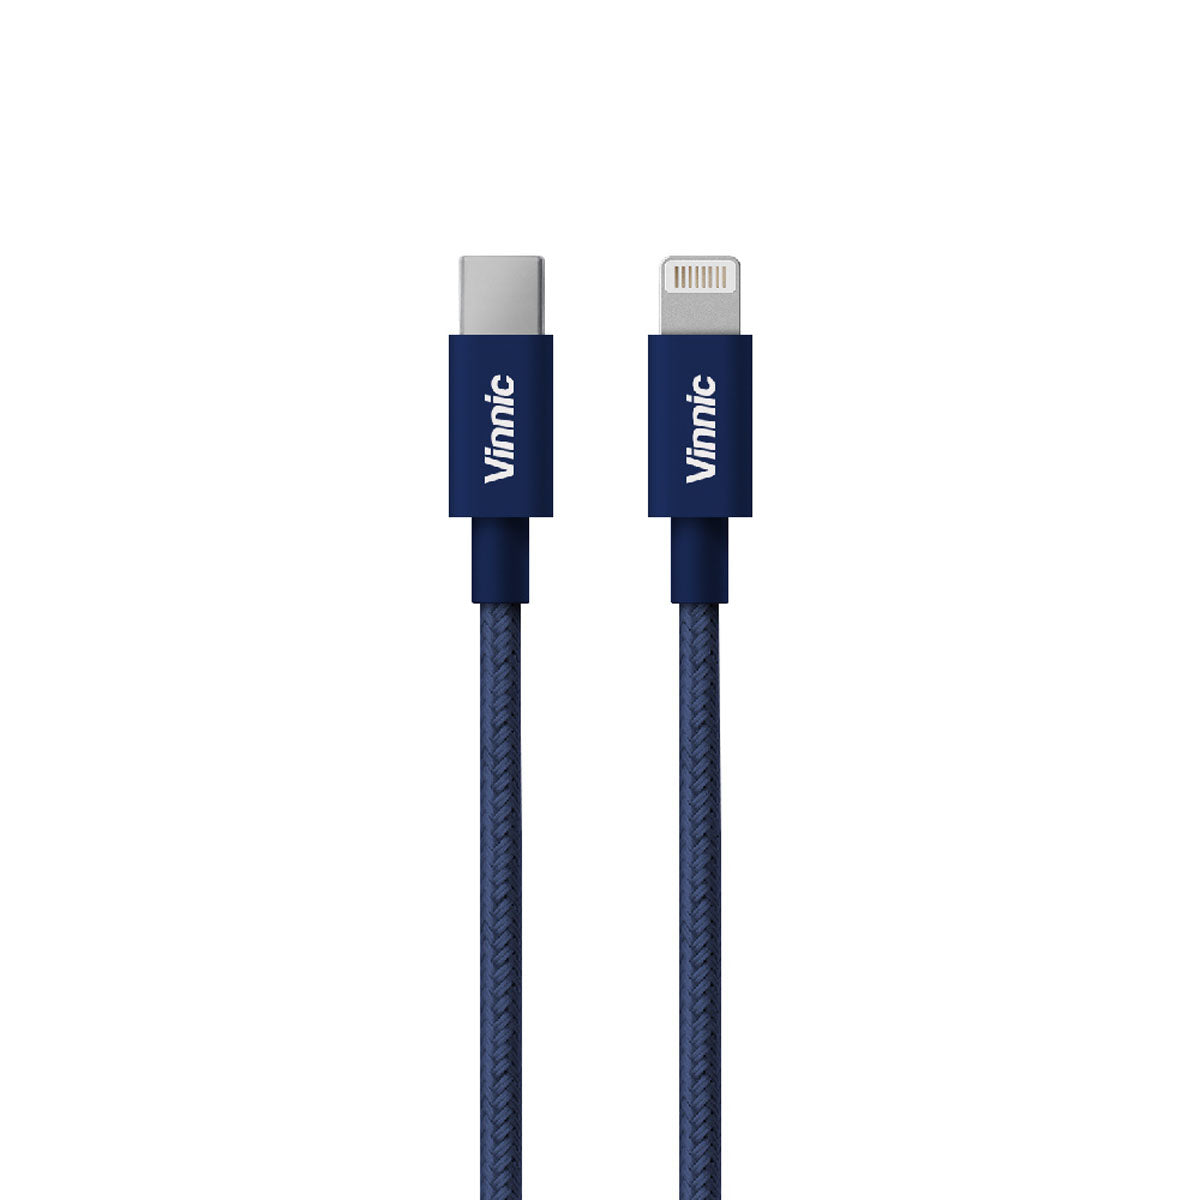 Vinnic MFi 蘋果官方認證 USB-C to MFi Lightning 傳輸充電線 - 海軍藍